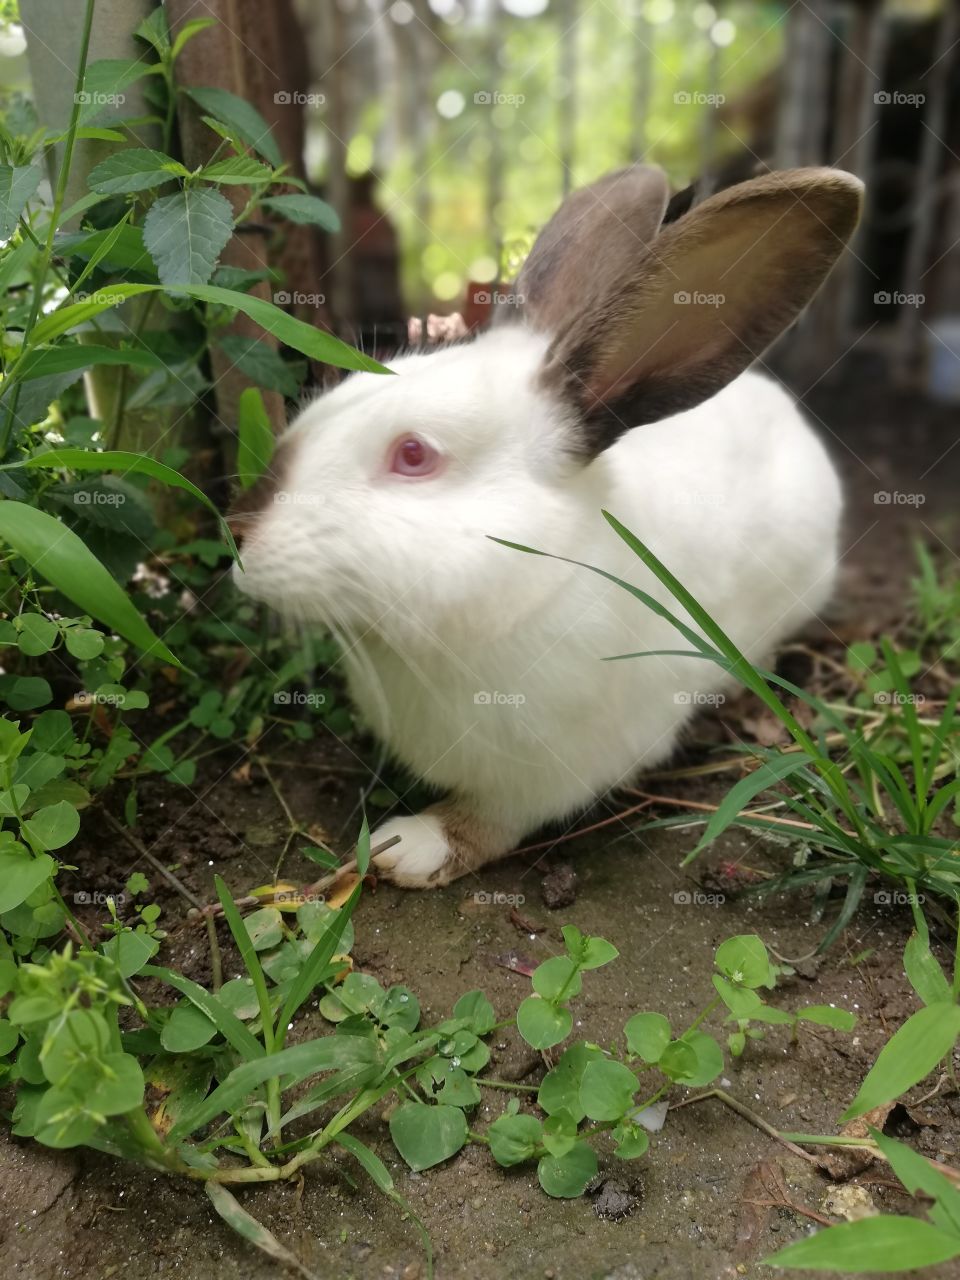 Conejo macho, mascota adulto. Conejo blanco y necho, ojos rojos en contacto con la naturaleza.